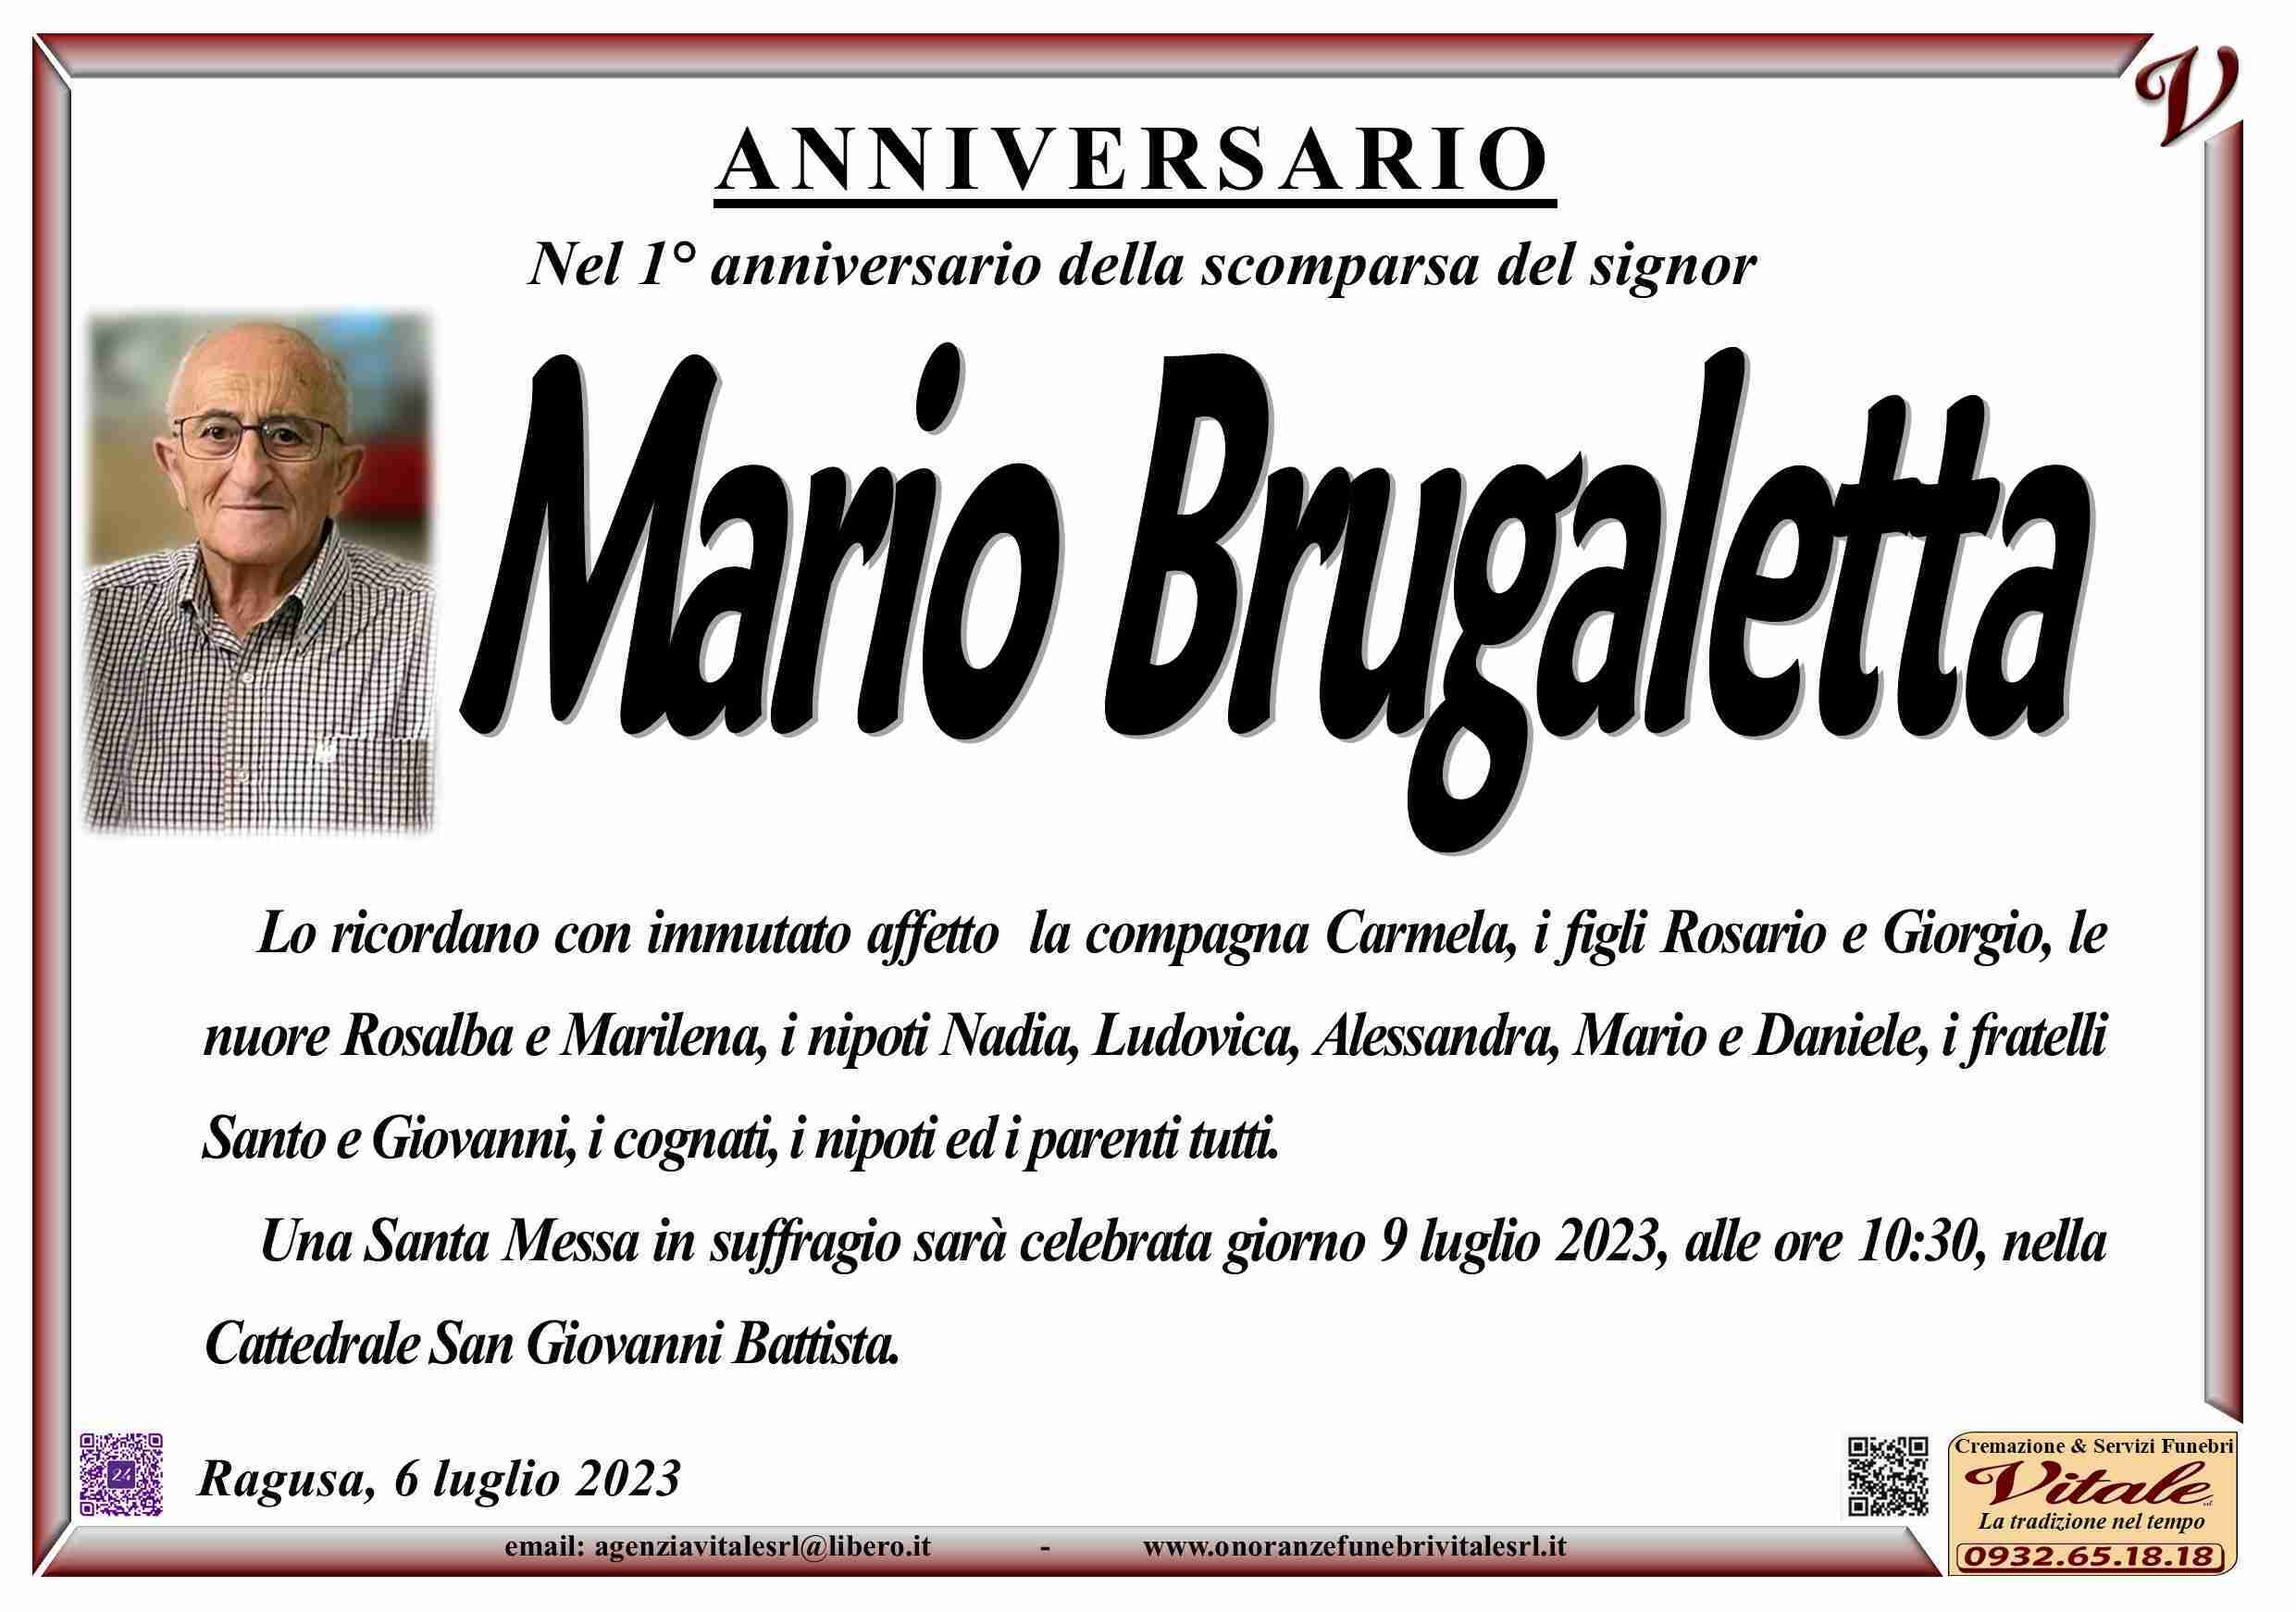 Mario Brugaletta